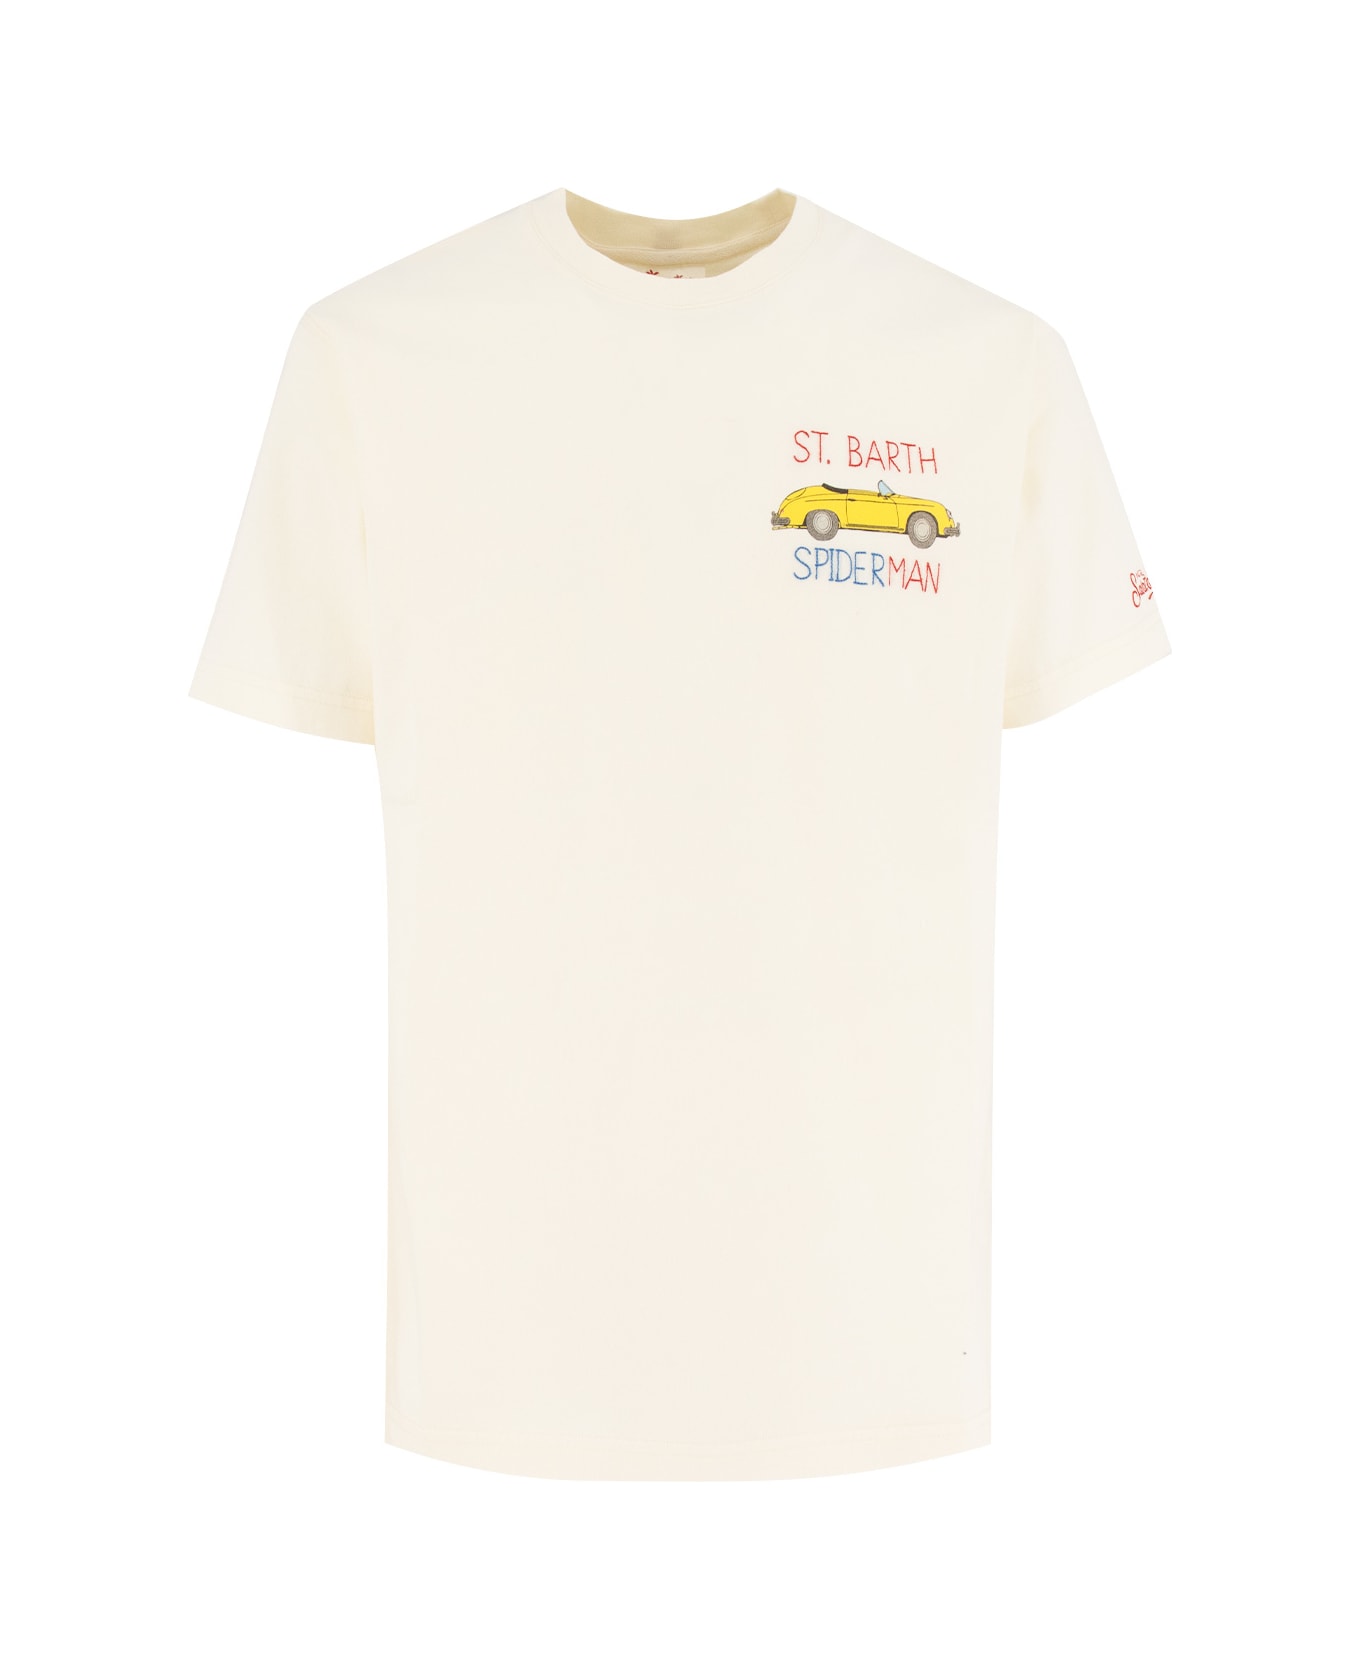 MC2 Saint Barth T-shirt - SPEED MAN 10 EMB シャツ